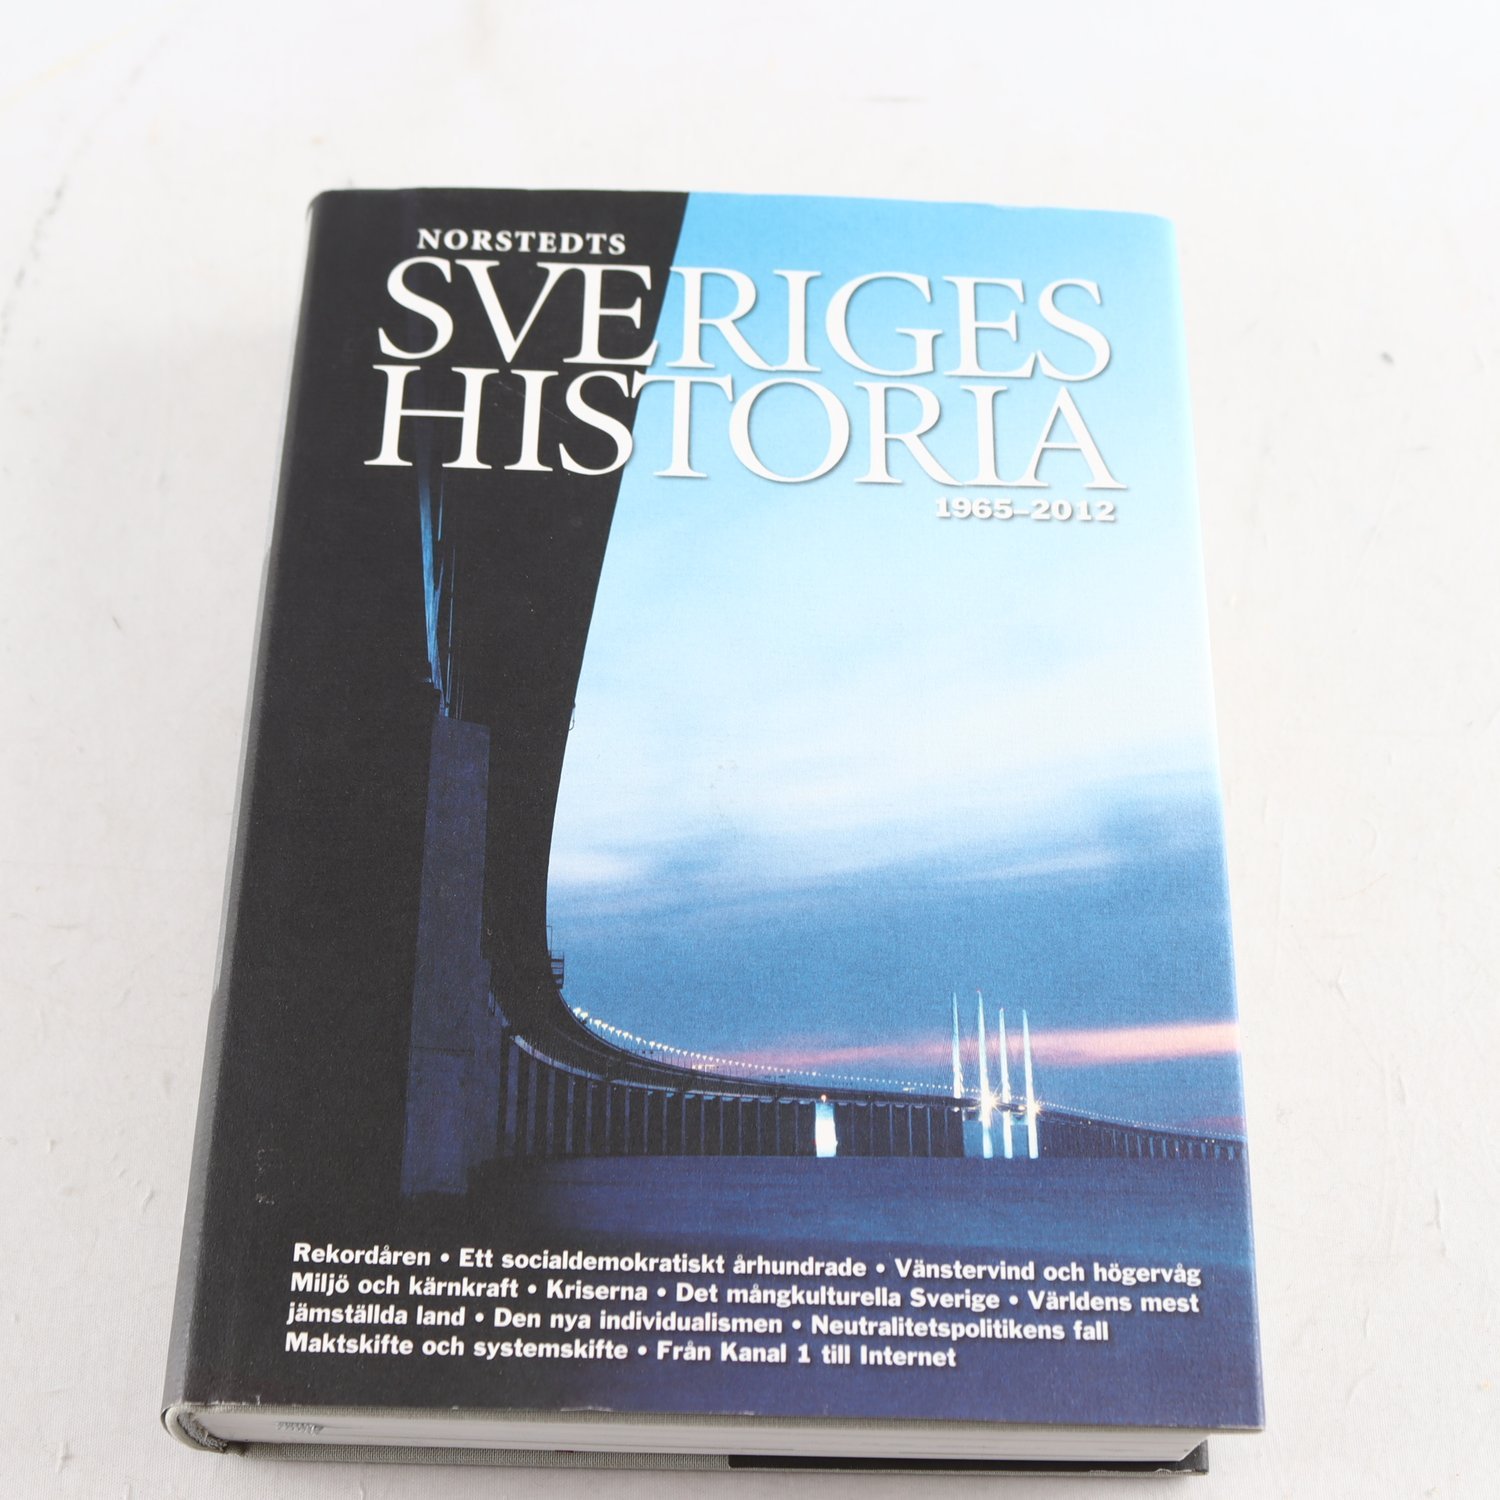 Norstedts Sveriges historia 1965-2012, K. Östberg & J. Andersson